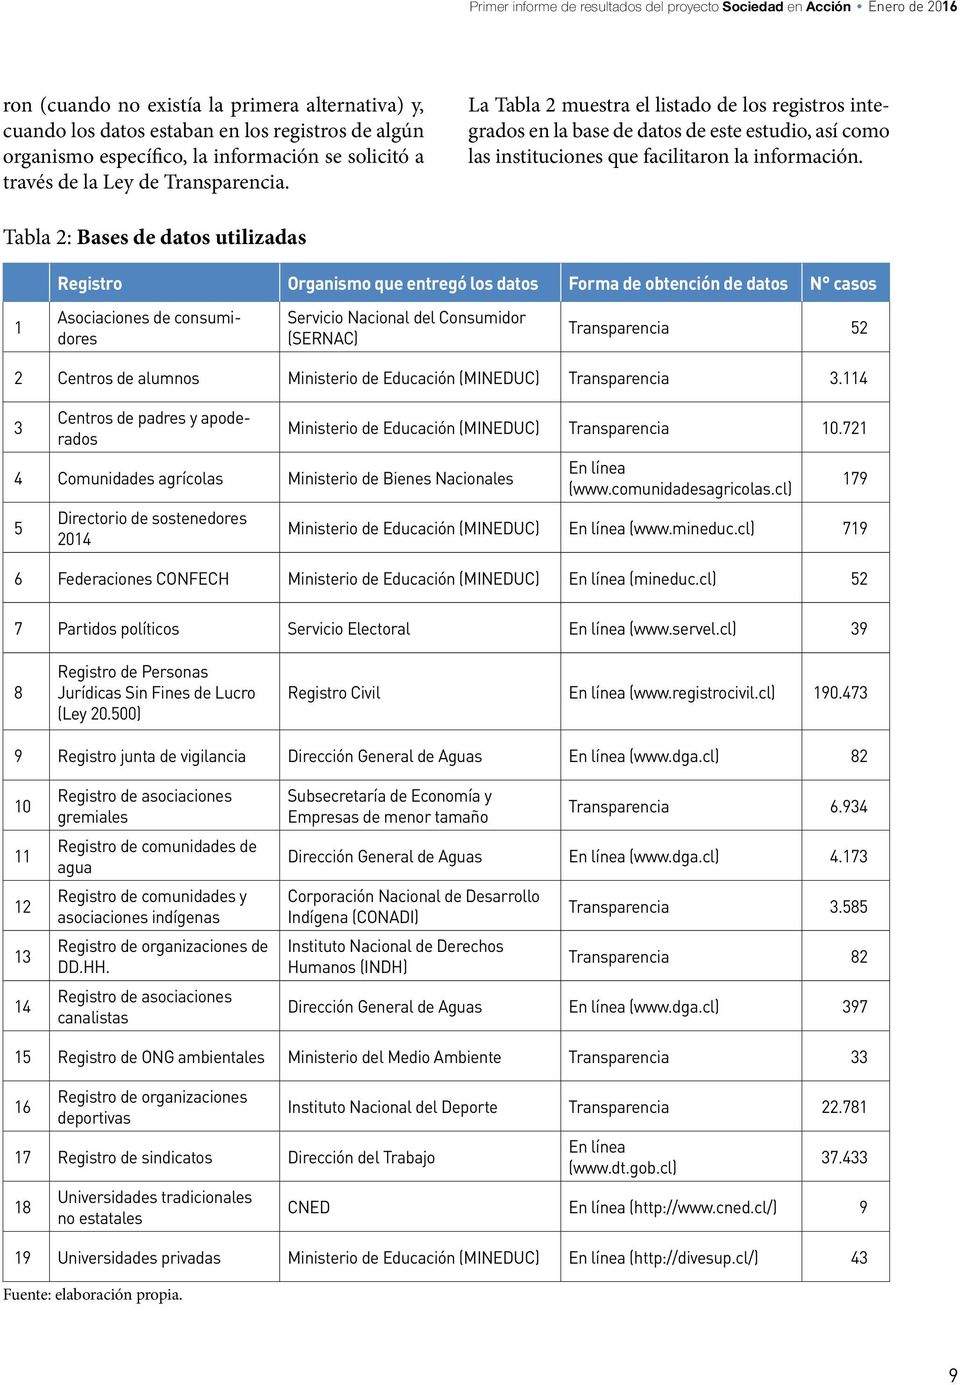 La Tabla 2 muestra el listado de los registros integrados en la base de datos de este estudio, así como las instituciones que facilitaron la información.